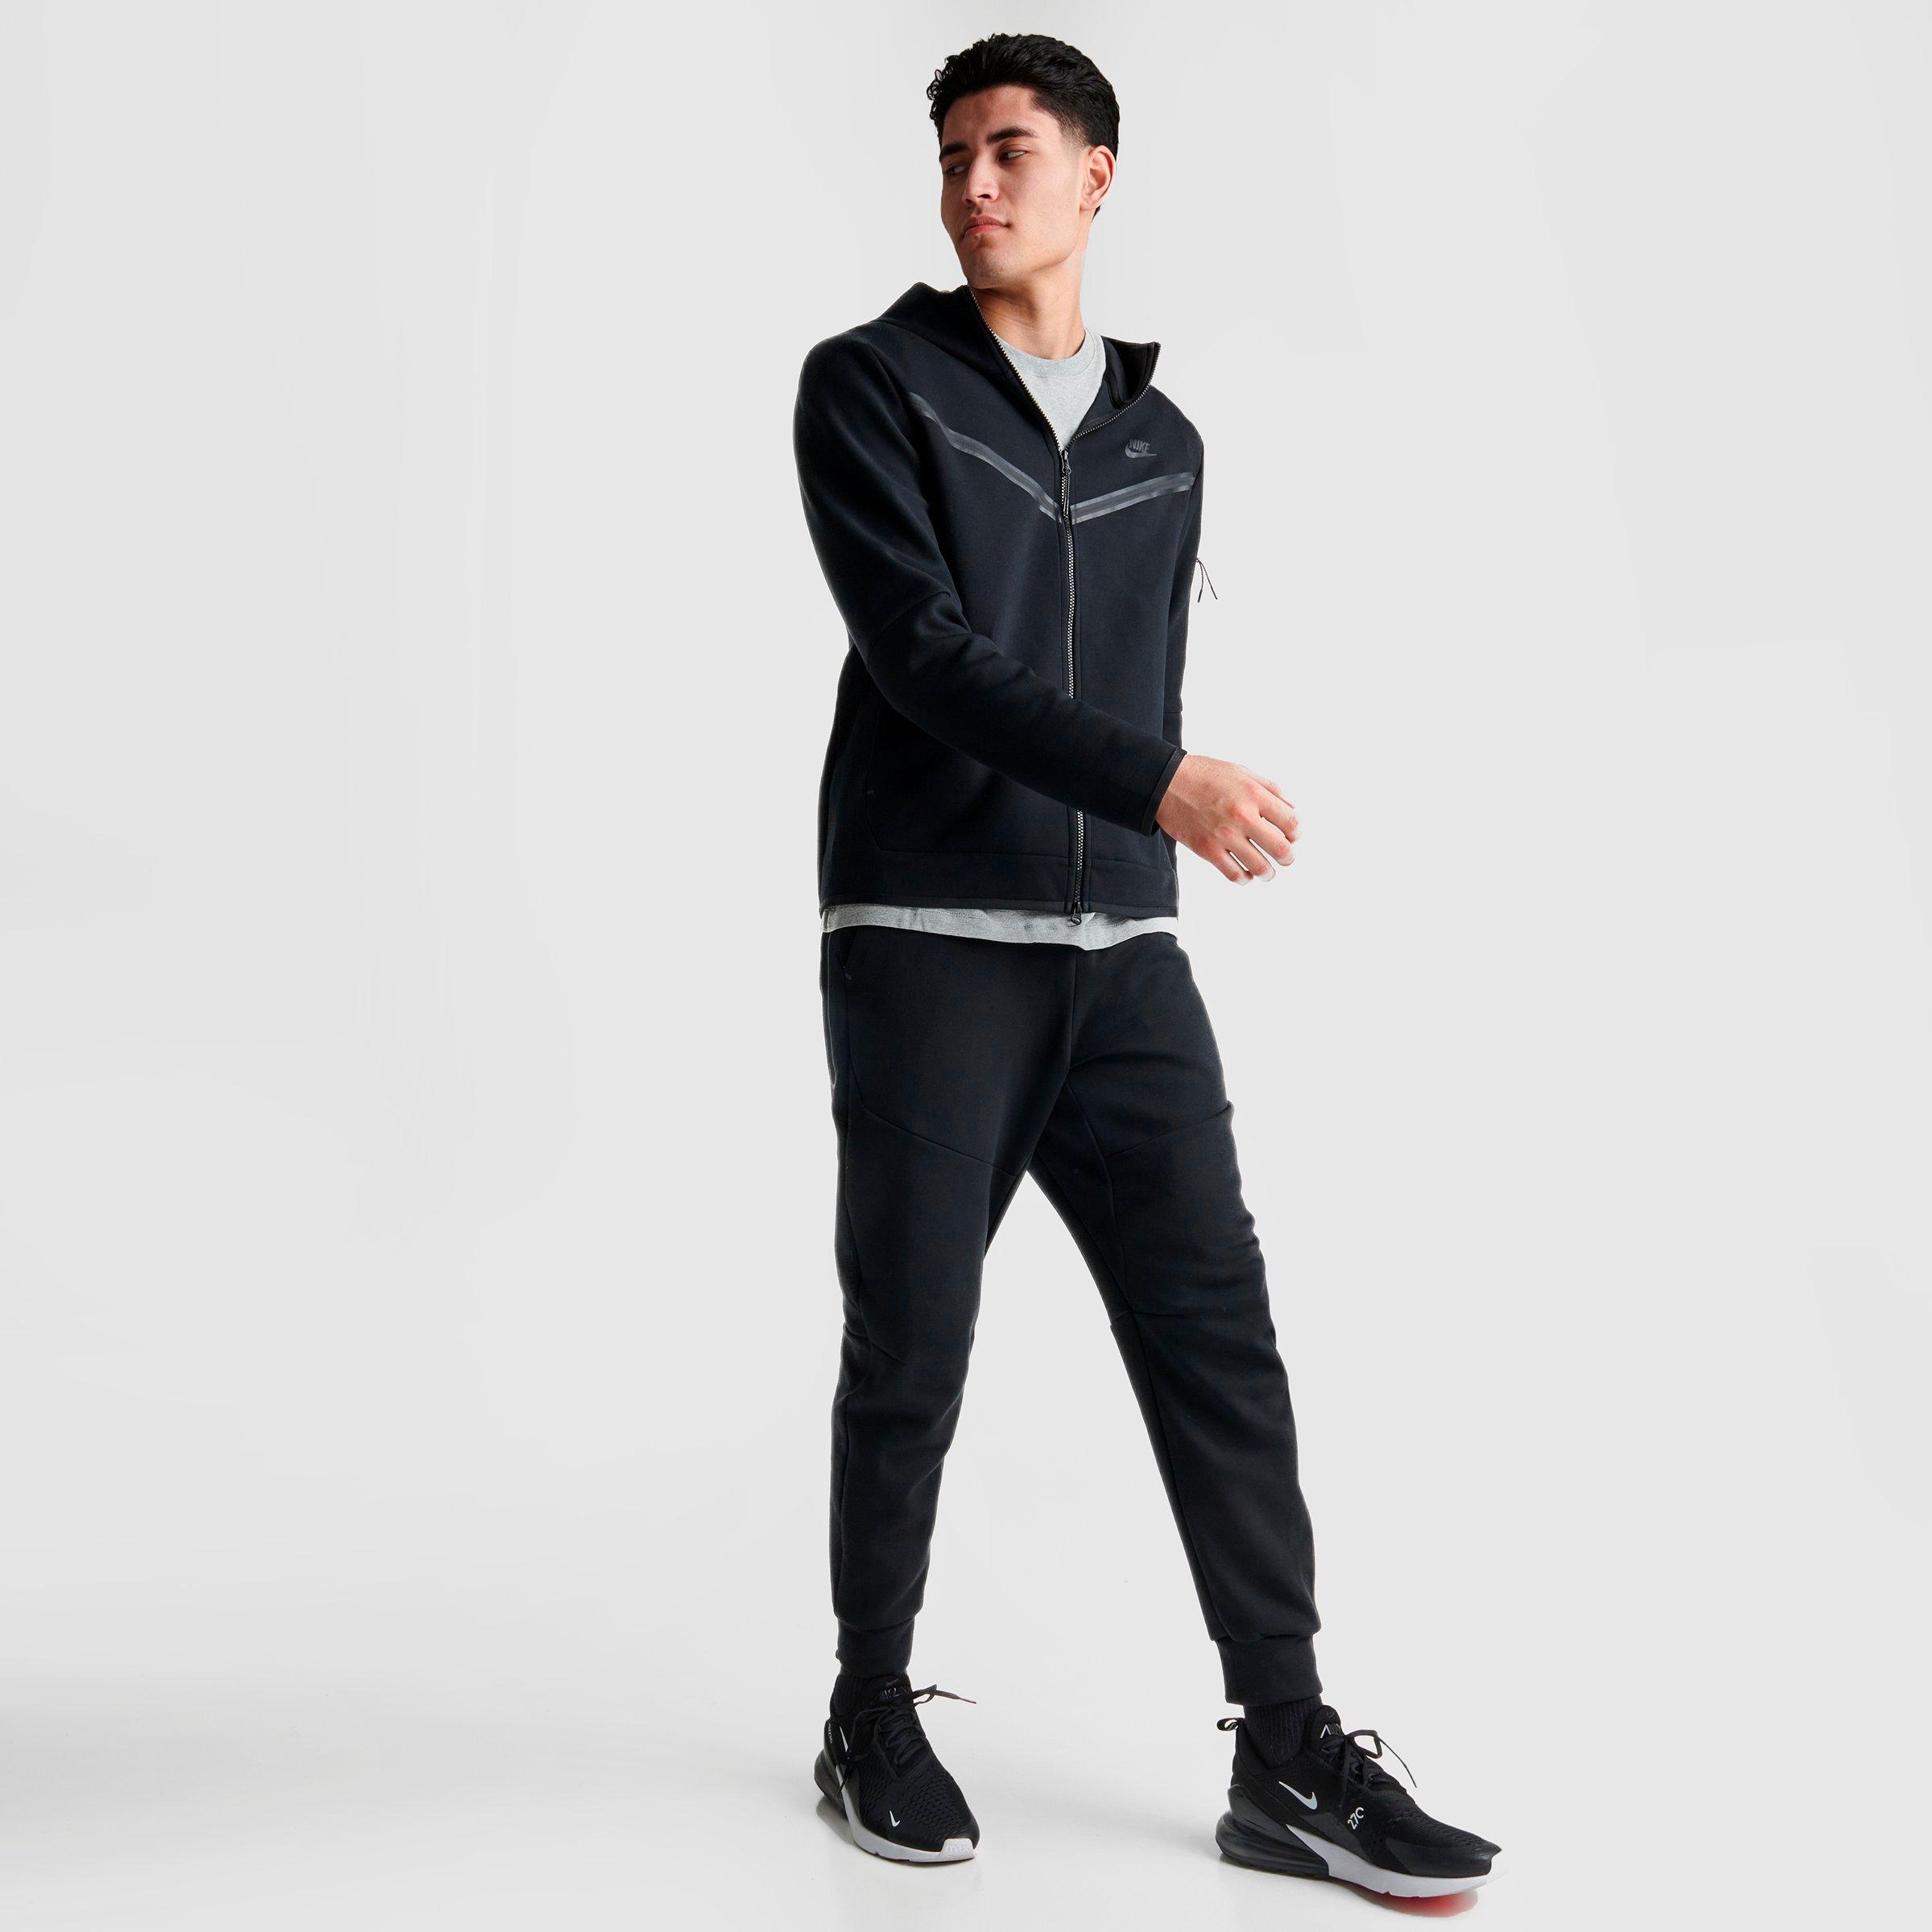 Men's Nike Sportswear Tech Fleece Taped 